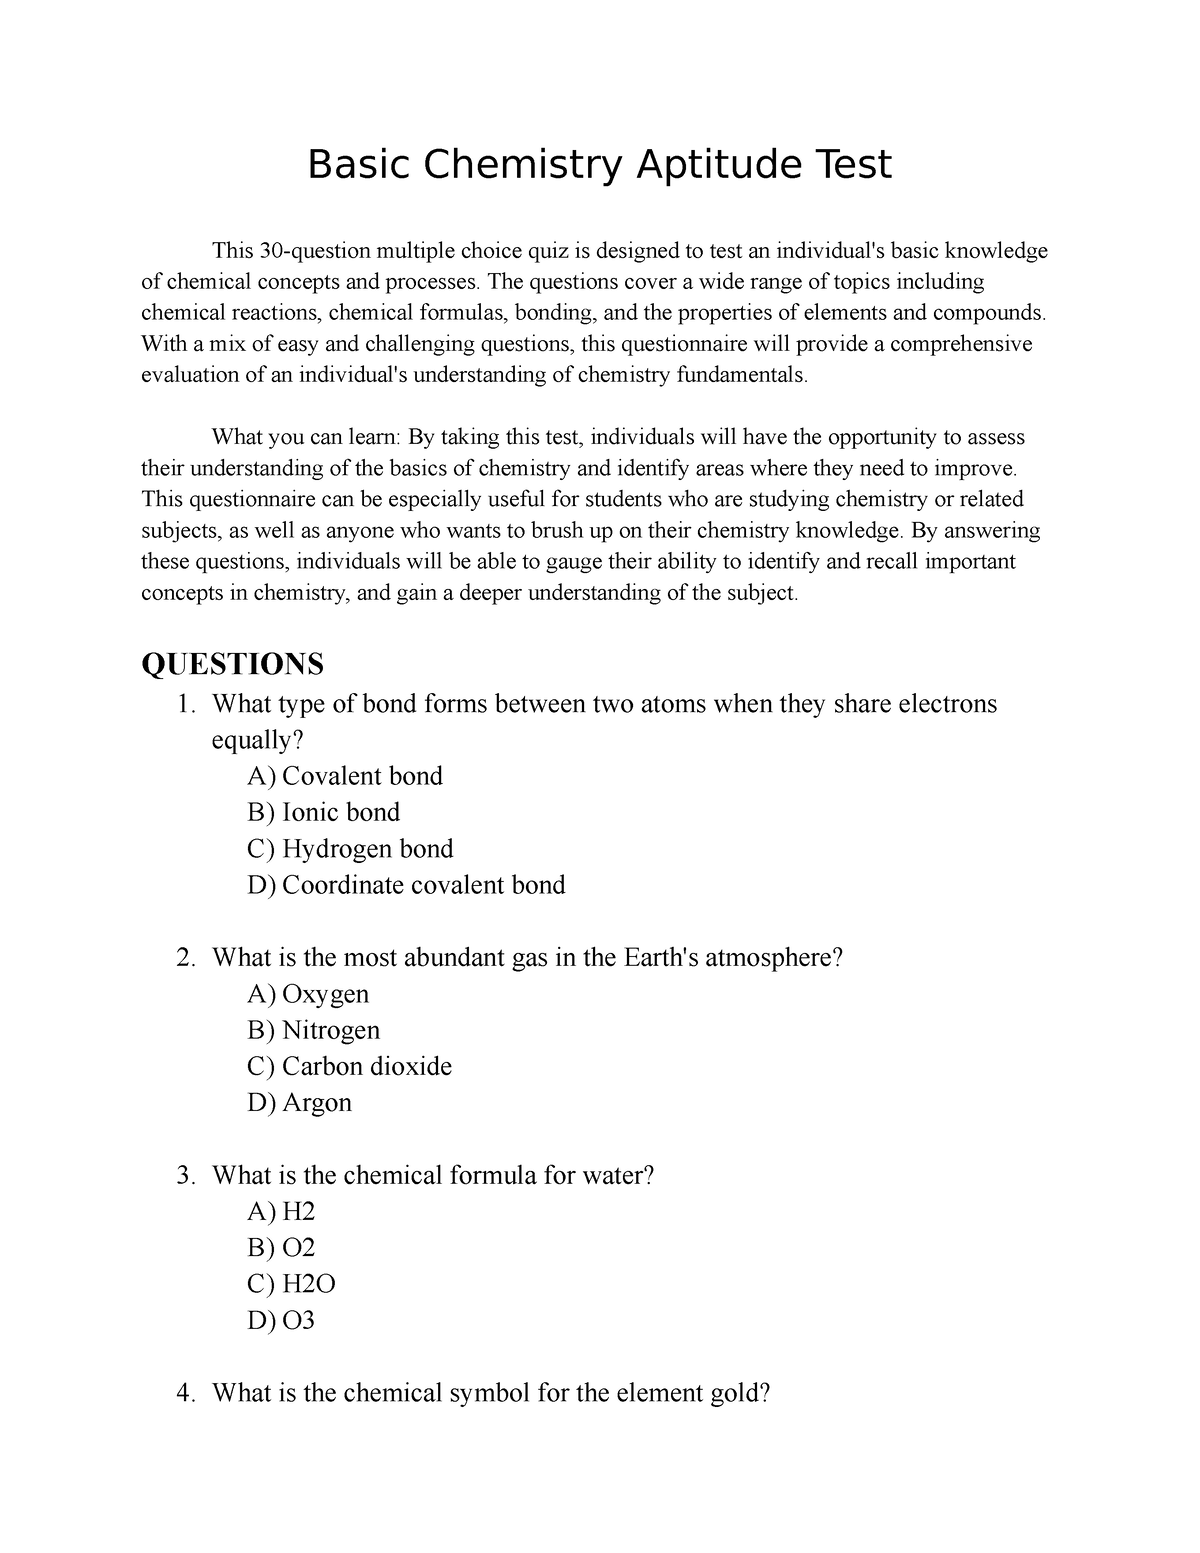 Basic Chemistry Aptitude Test With Answer Key Basic Chemistry Aptitude Test This 30 question